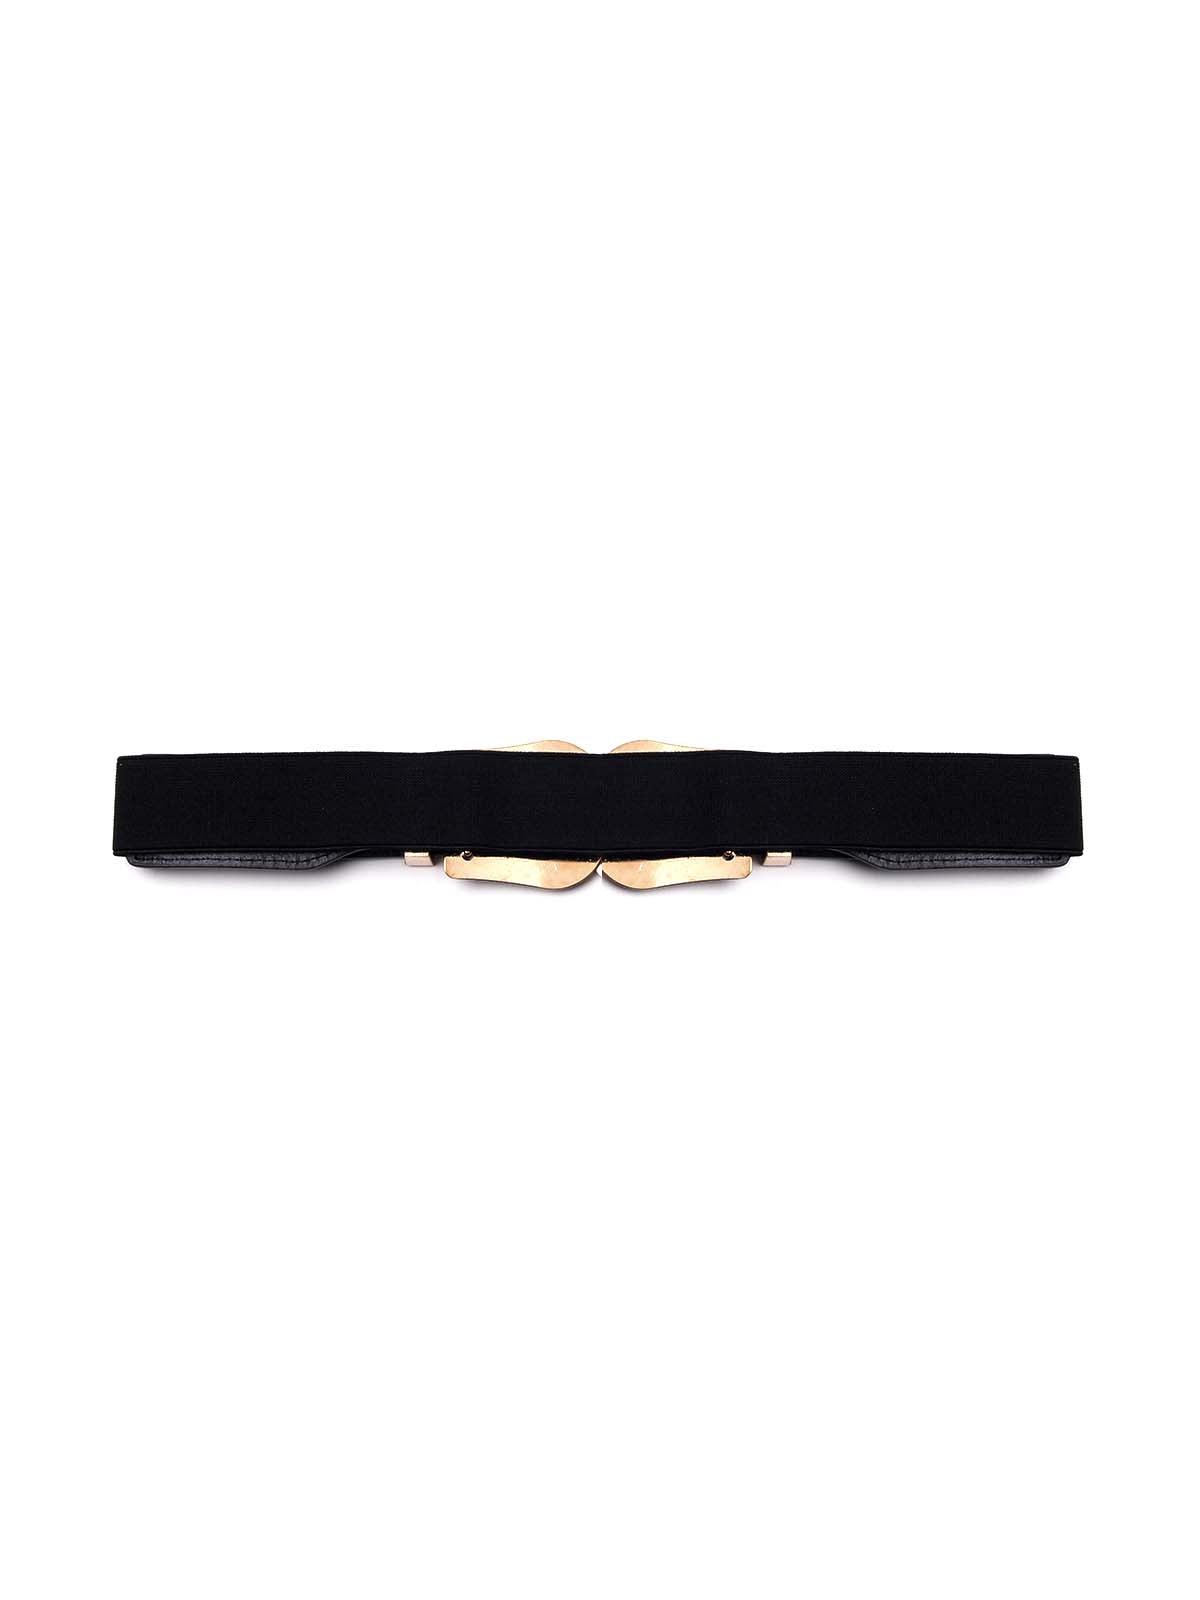 Black belt embellished with buckle on it - Odette